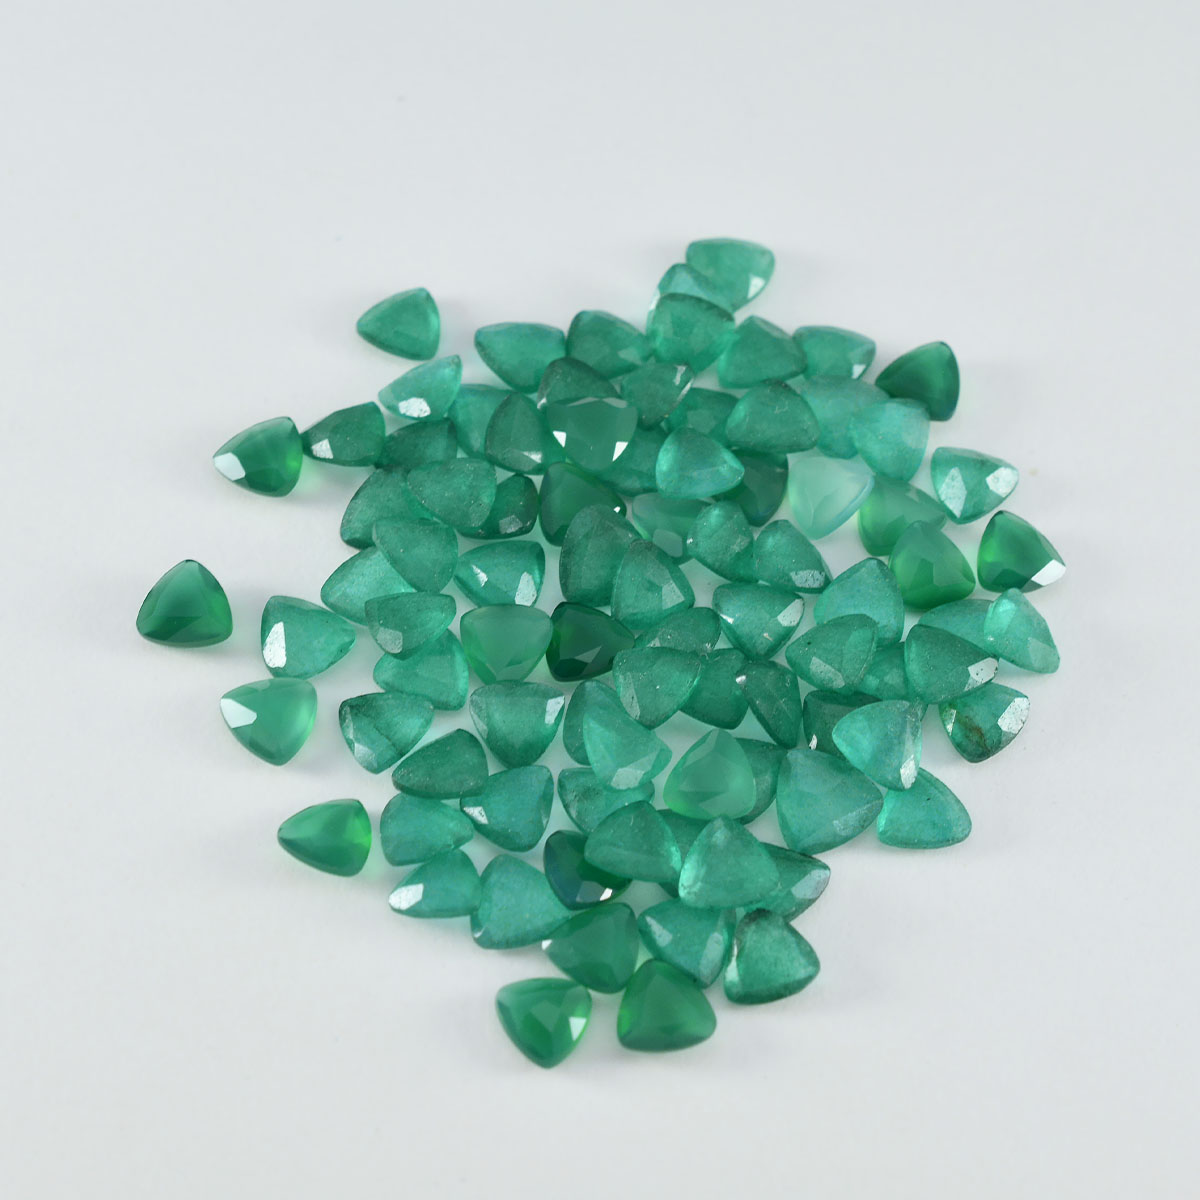 Riyogems 1 pieza de ónix verde natural facetado de 6x6 mm con forma de billón, piedra preciosa suelta de calidad fantástica